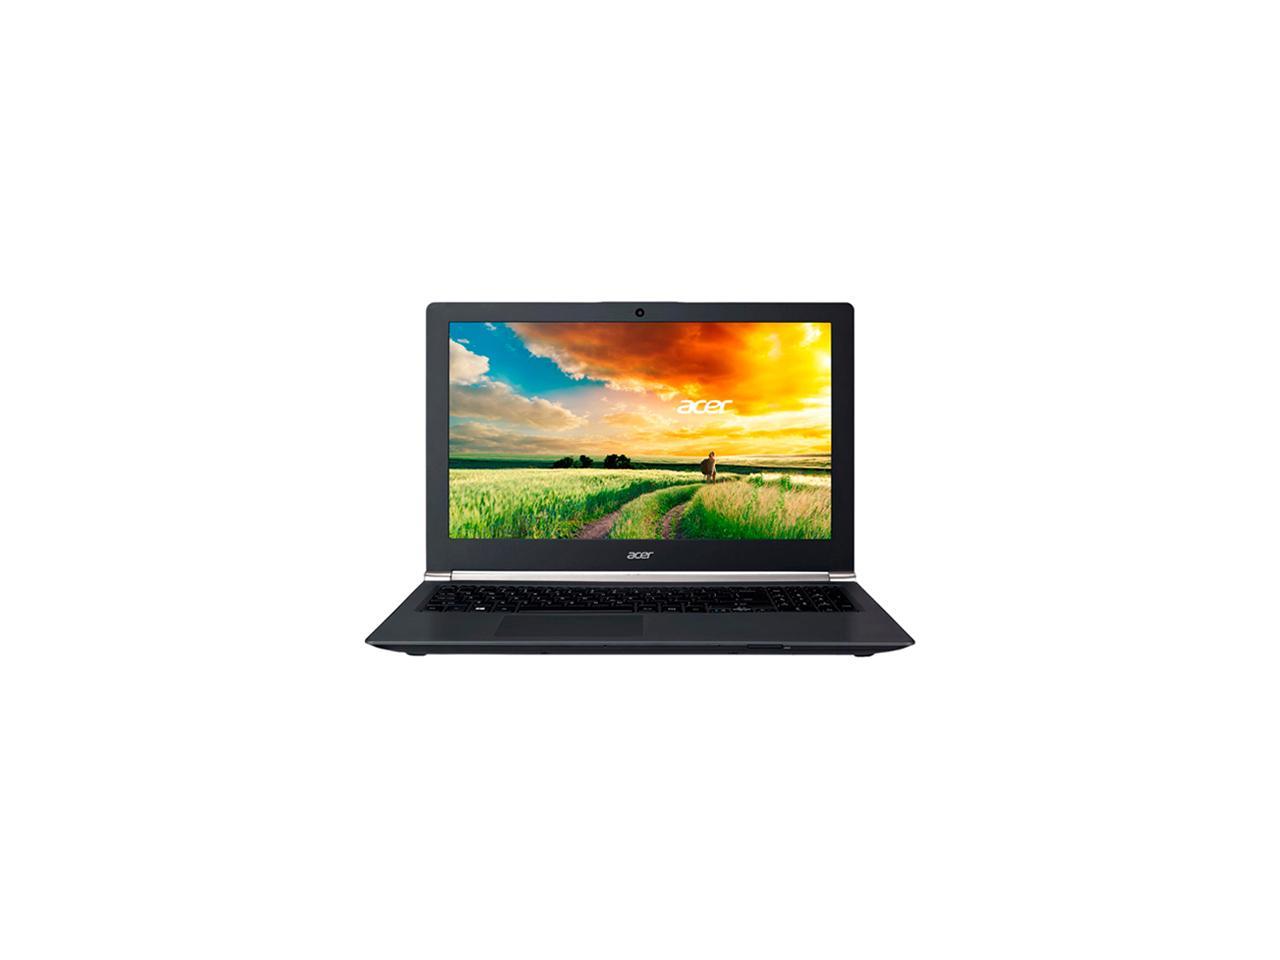 Acer Vn7 571g 719d Laptop Intel Core I7 5500u 2 4 Ghz 15 6 Windows 8 1 64 Bit Newegg Com